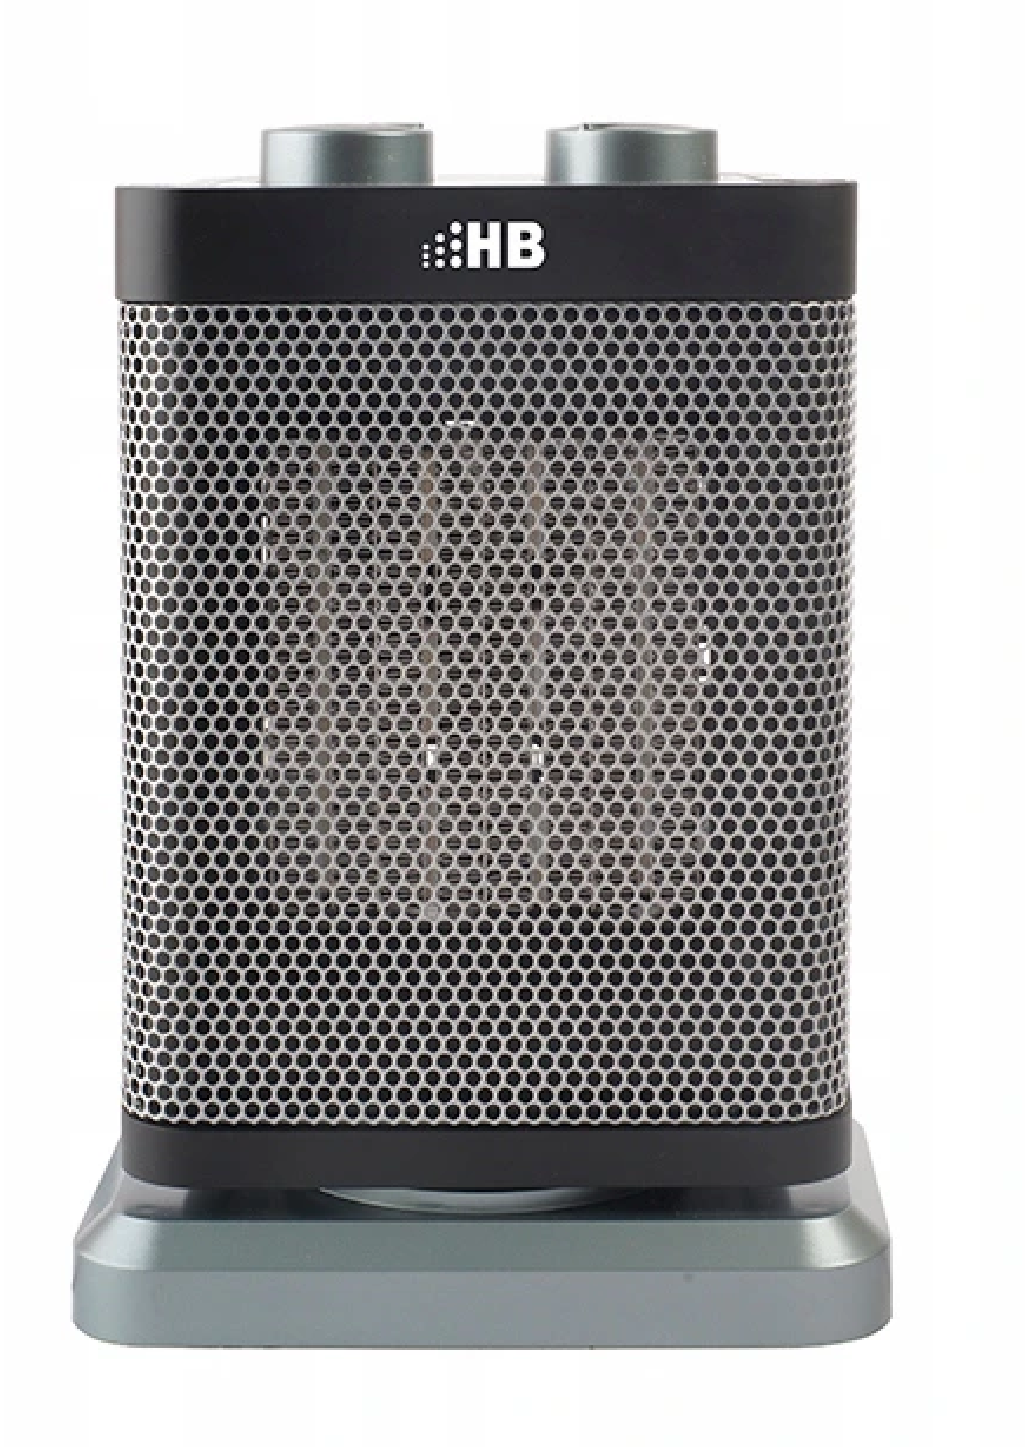 Termowentylator HB CFH1503